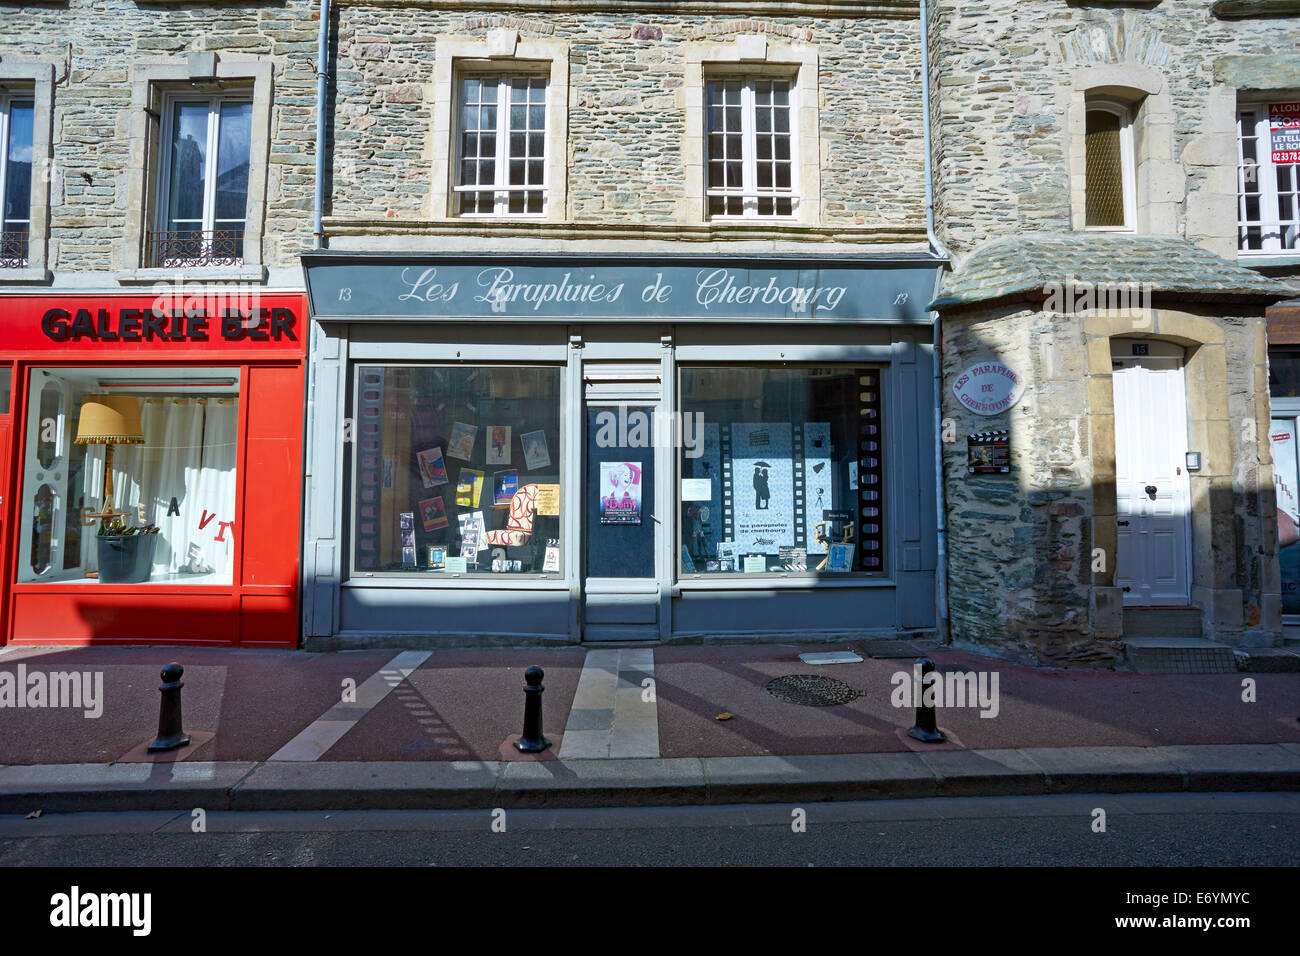 Cherbourg shop Banque de photographies et d'images à haute résolution -  Alamy